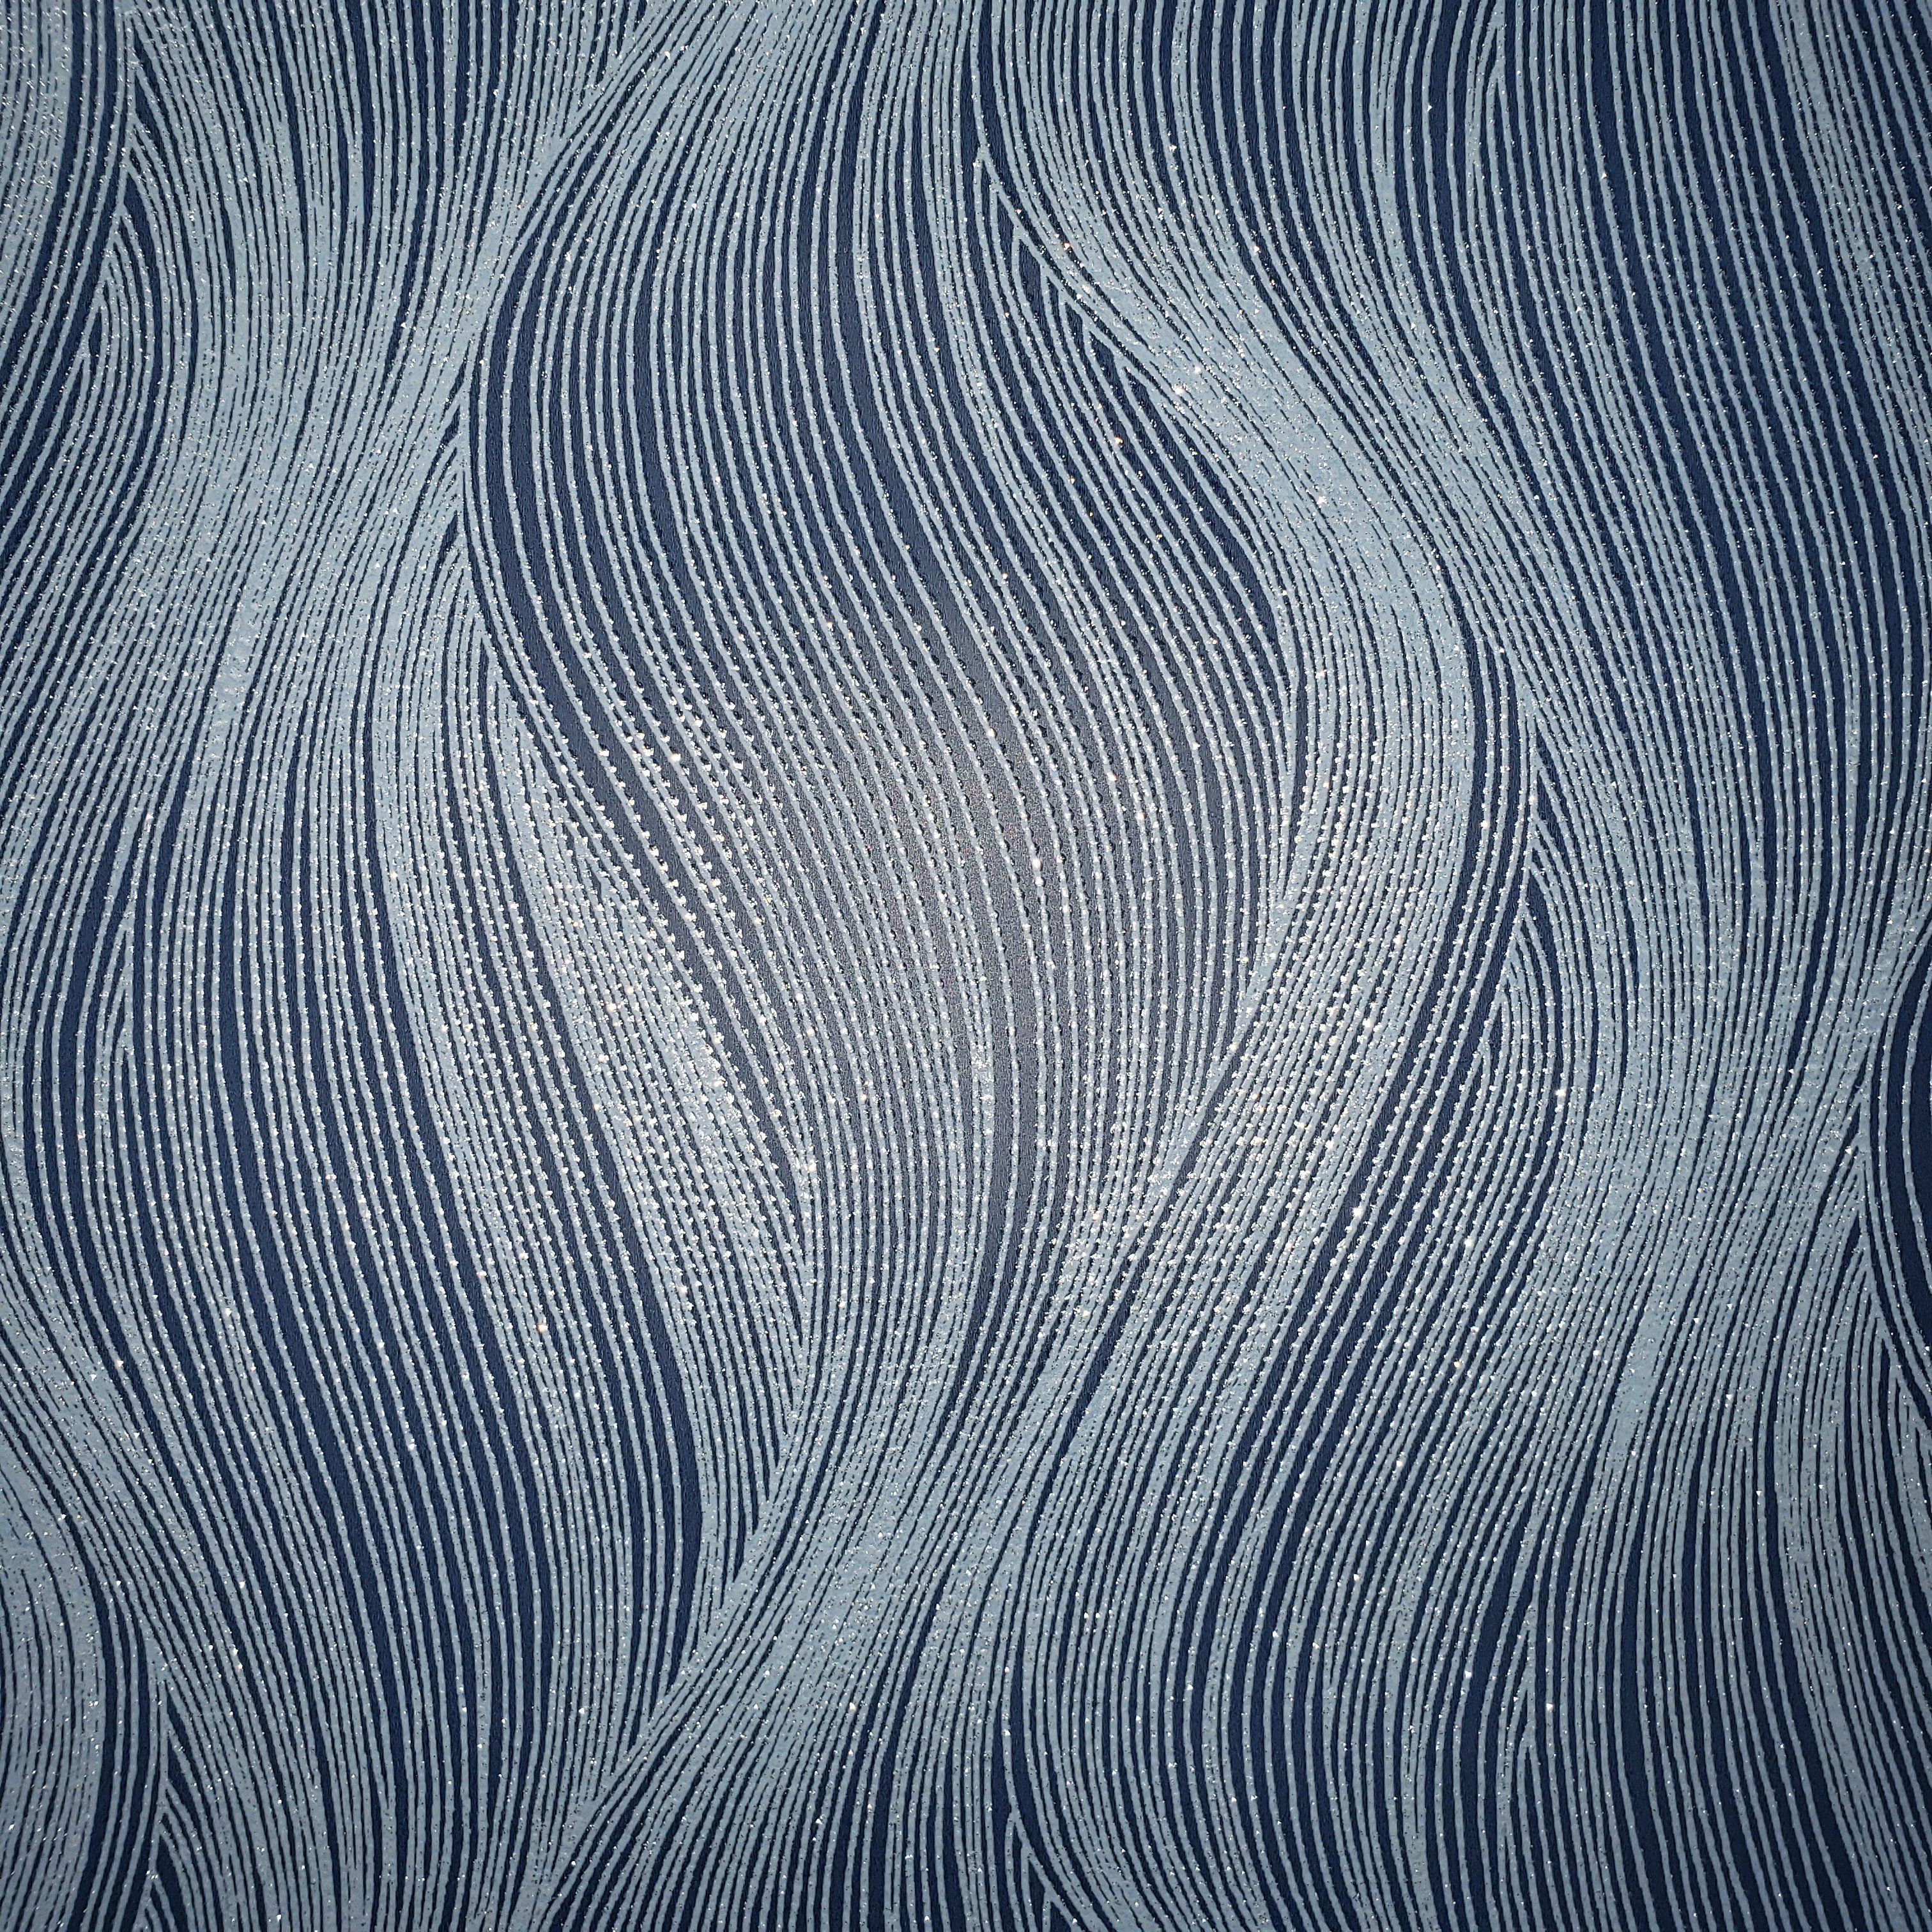 WM15310501 Textured modern wallpaper navy blue silver glitter wavy lin